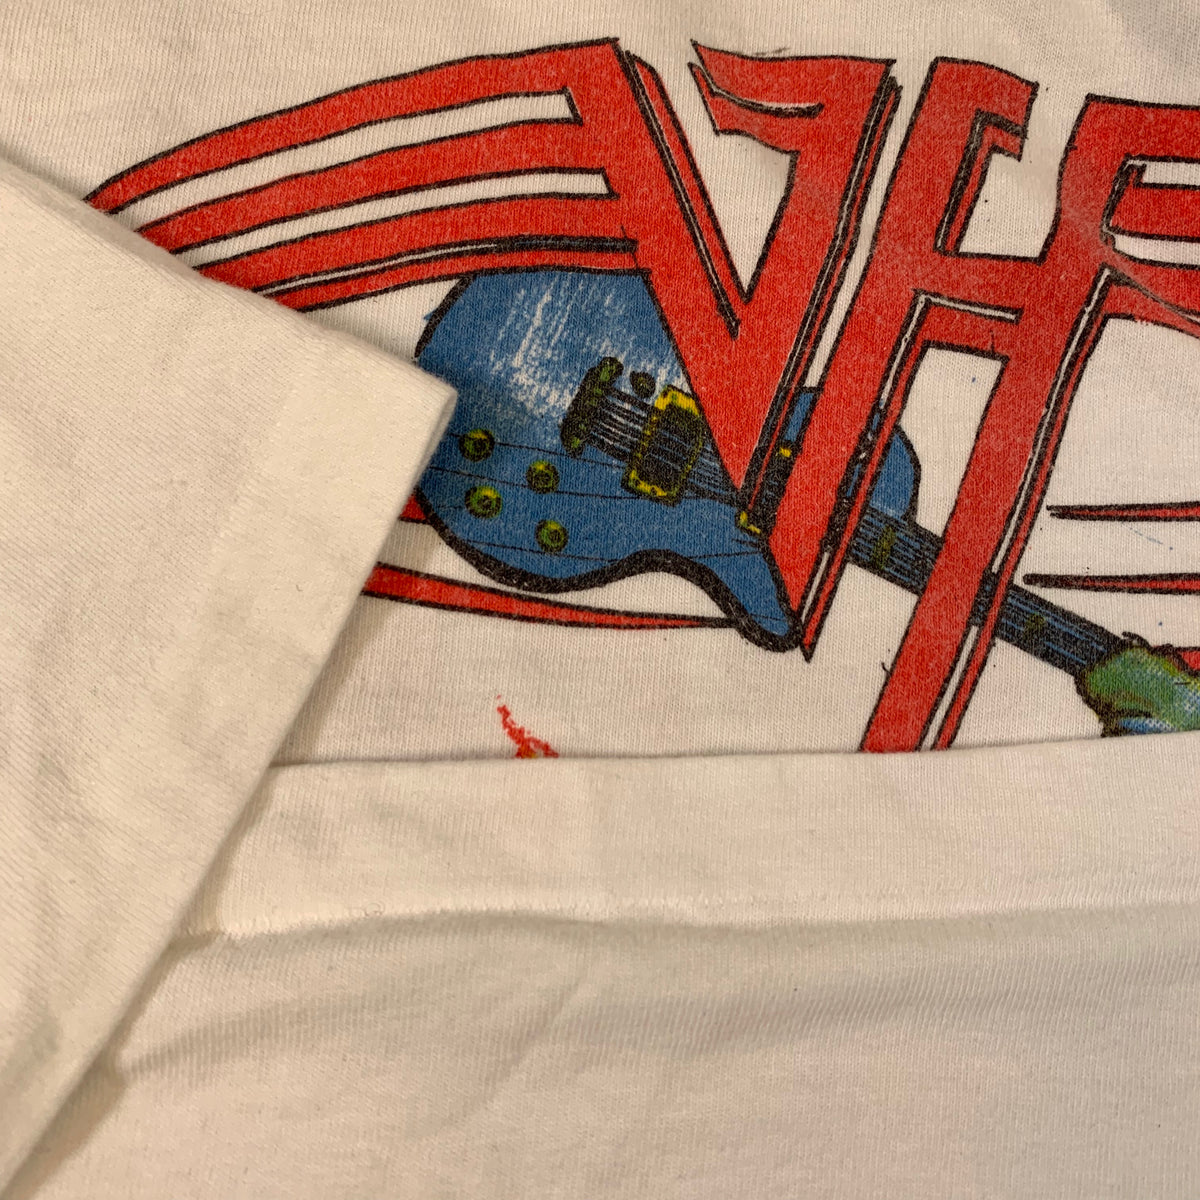 Vintage Van Halen &quot;F.U.C.K.&quot; T-Shirt